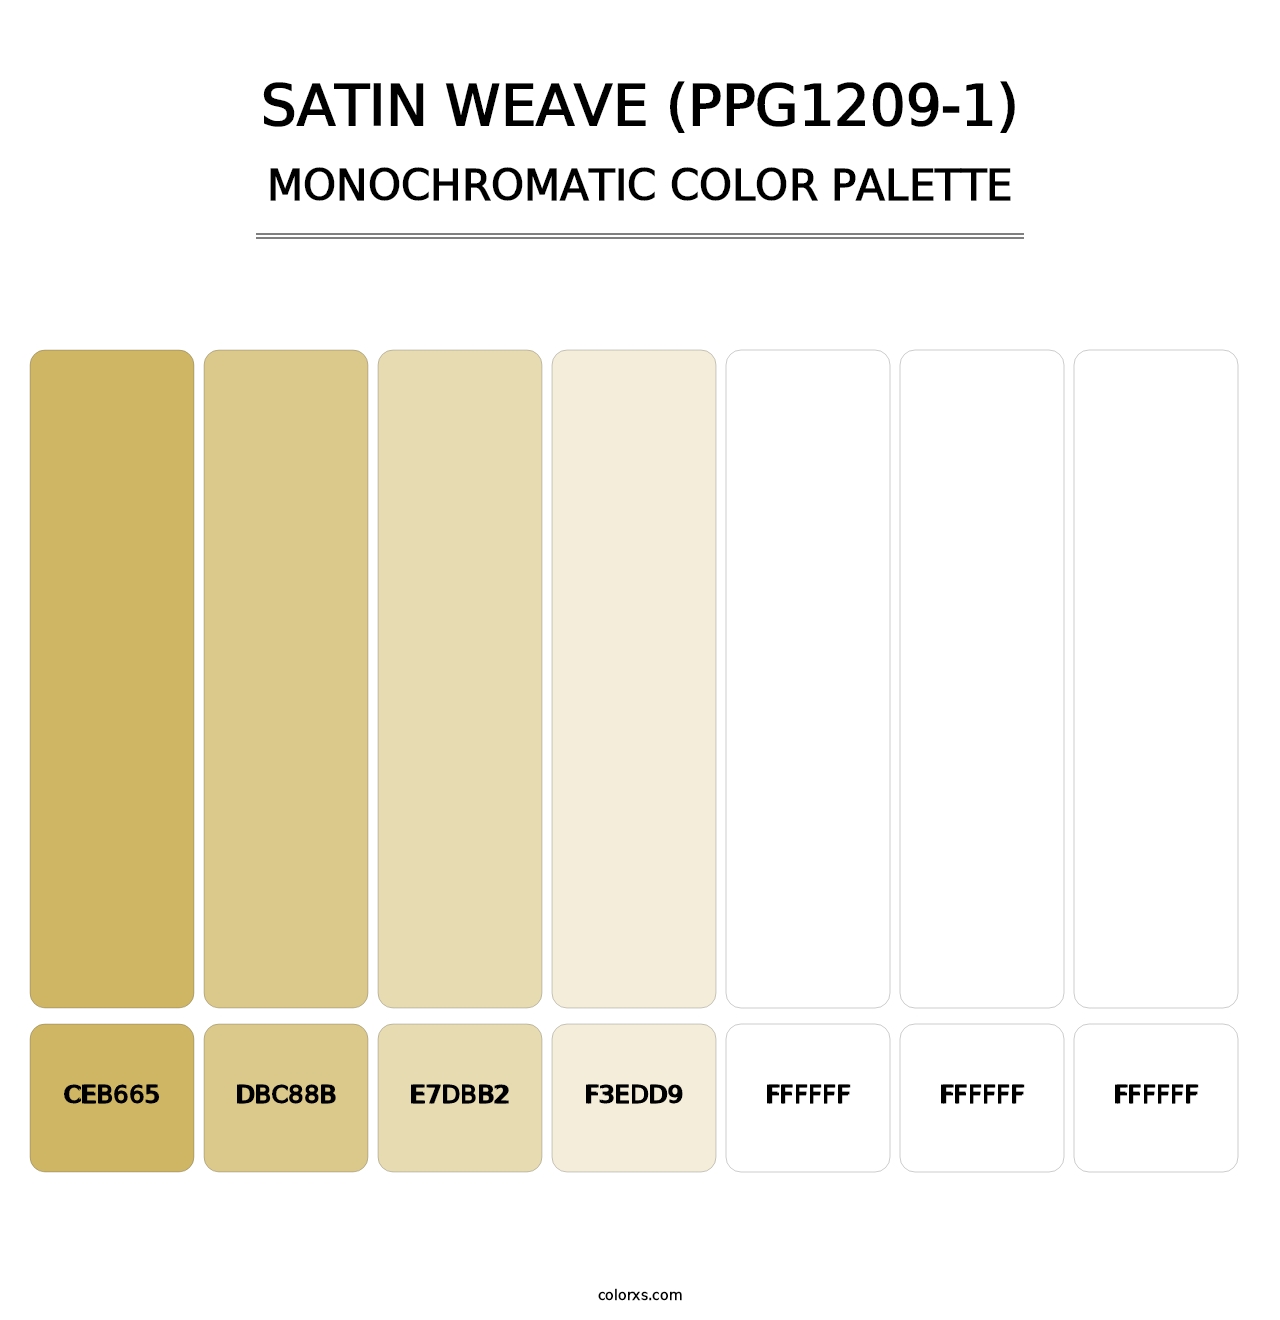 Satin Weave (PPG1209-1) - Monochromatic Color Palette